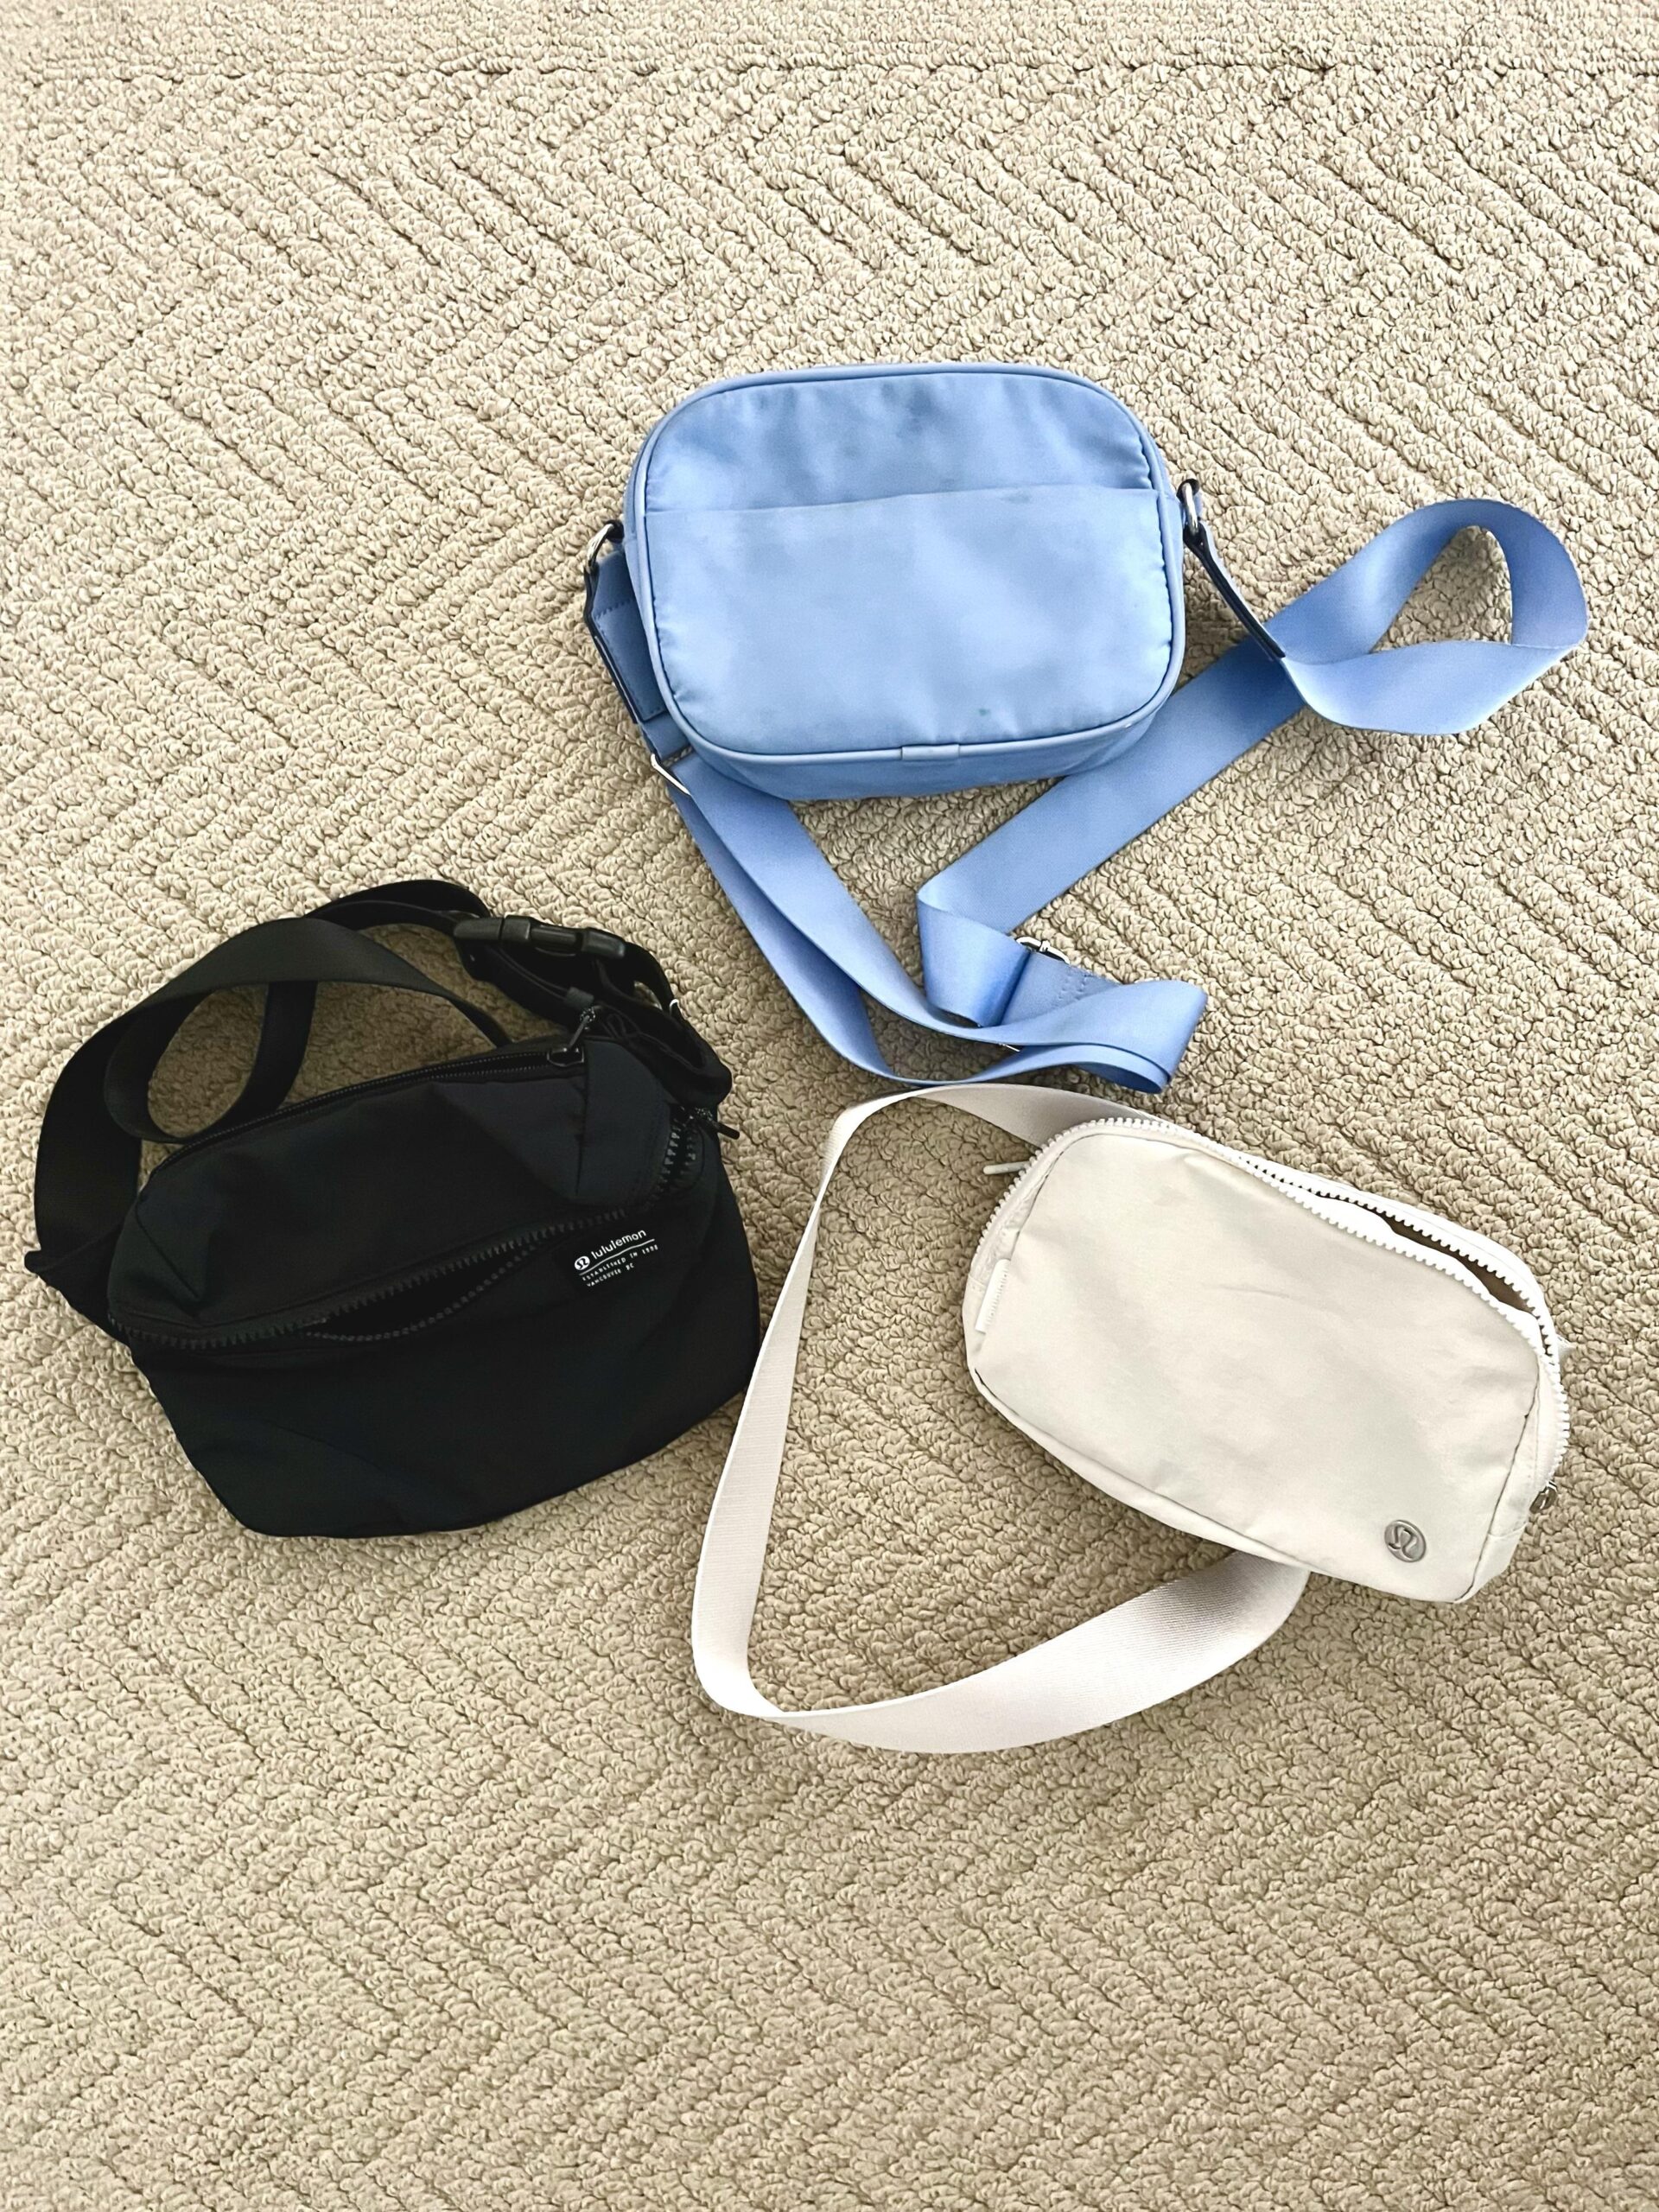 The Best Belt Bags (+ A Lululemon Belt Bag Dupe)